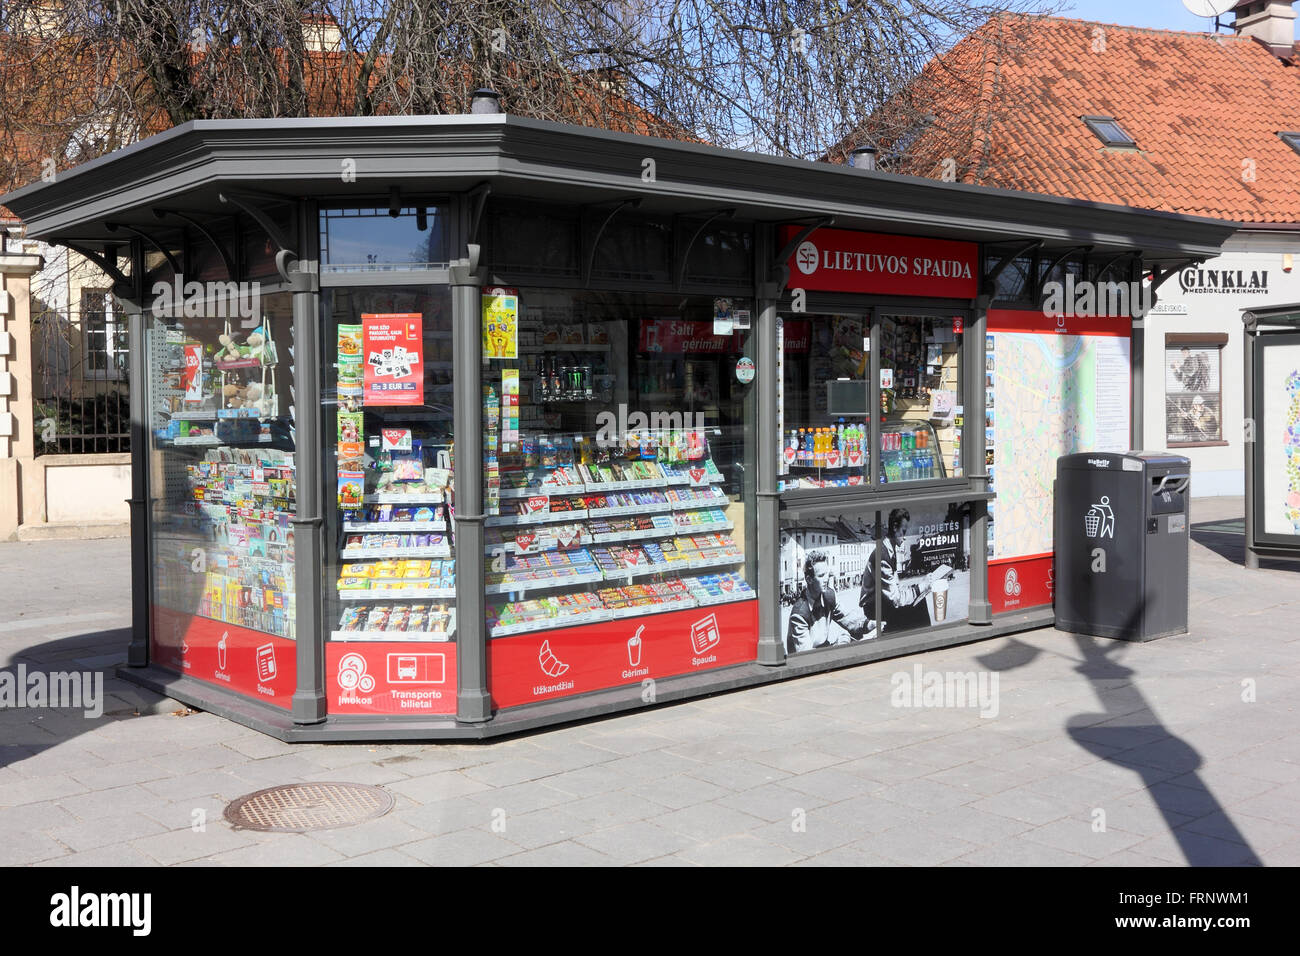 VILNIUS, Lituania - 13 Marzo 2016: nuova e moderna generatioin shop "Lietuvos Spauda' per la vendita di giornali, bevande e un fast food Foto Stock